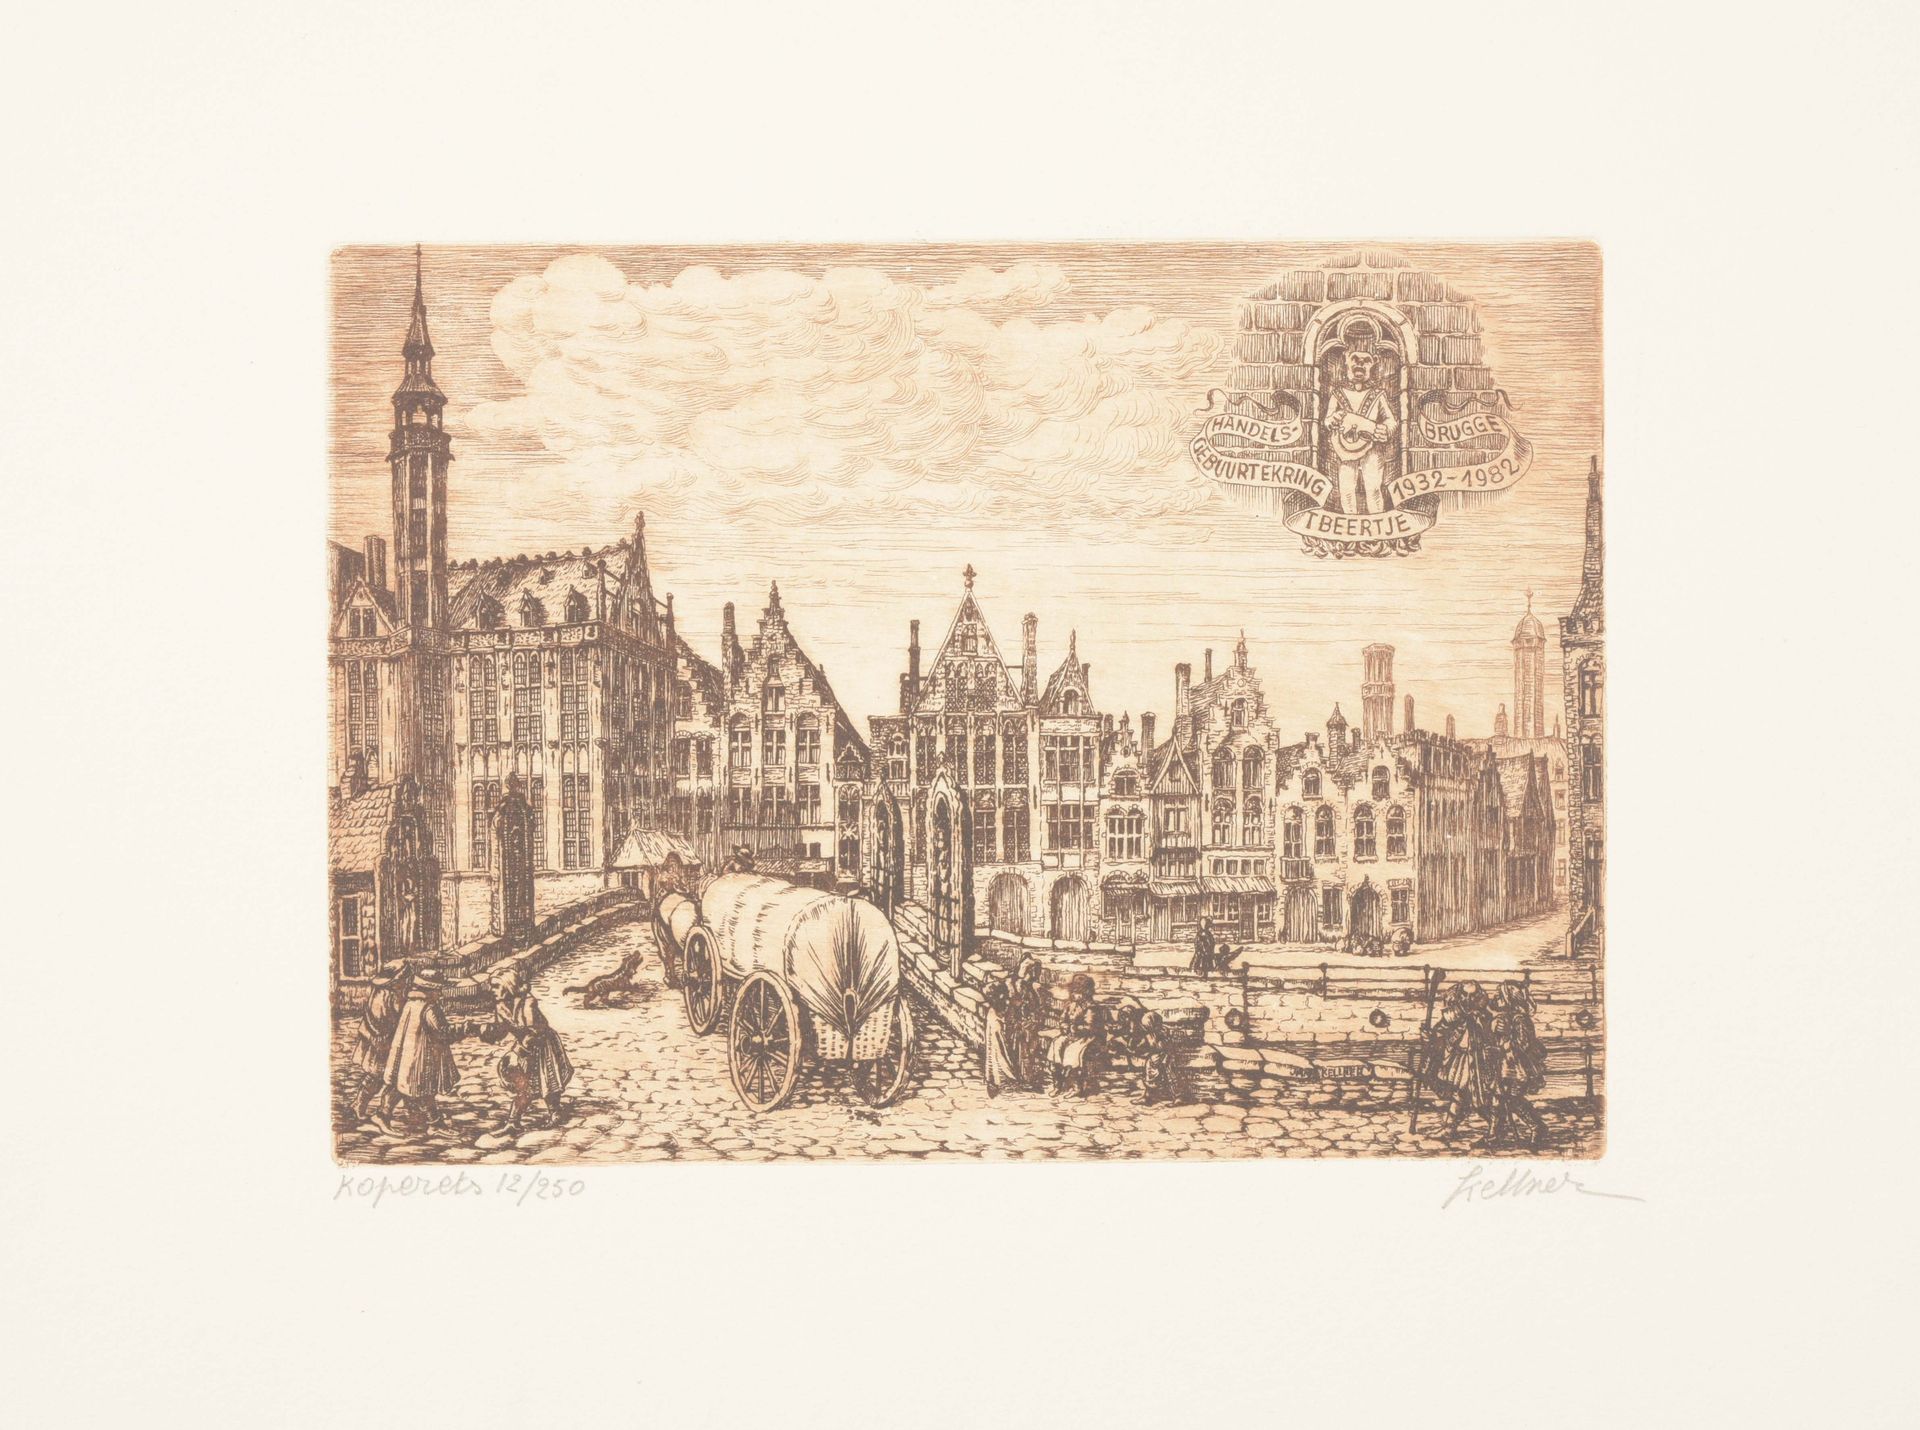 [Brugge] Groene Rei te Brugge

Anonieme ets (13 x 24 cm), laat 19de eeuw (1879?)&hellip;